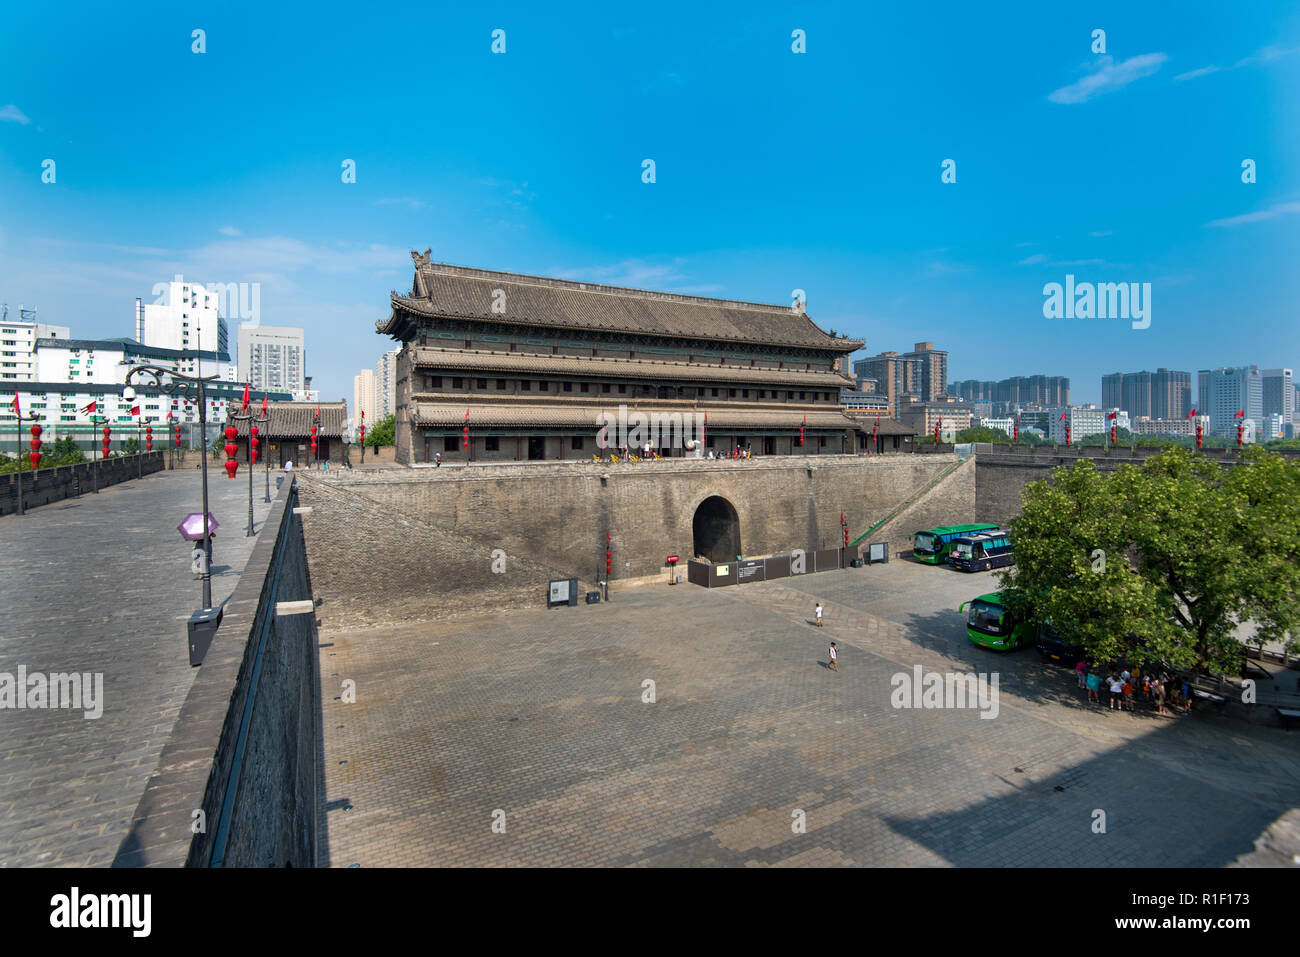 XIAN, CHINA - 26 May 2018: Der bogenschütze Turm ist der Haupteingang der Xian Stadtmauer, die die gesamte Stadt in China. Stockfoto